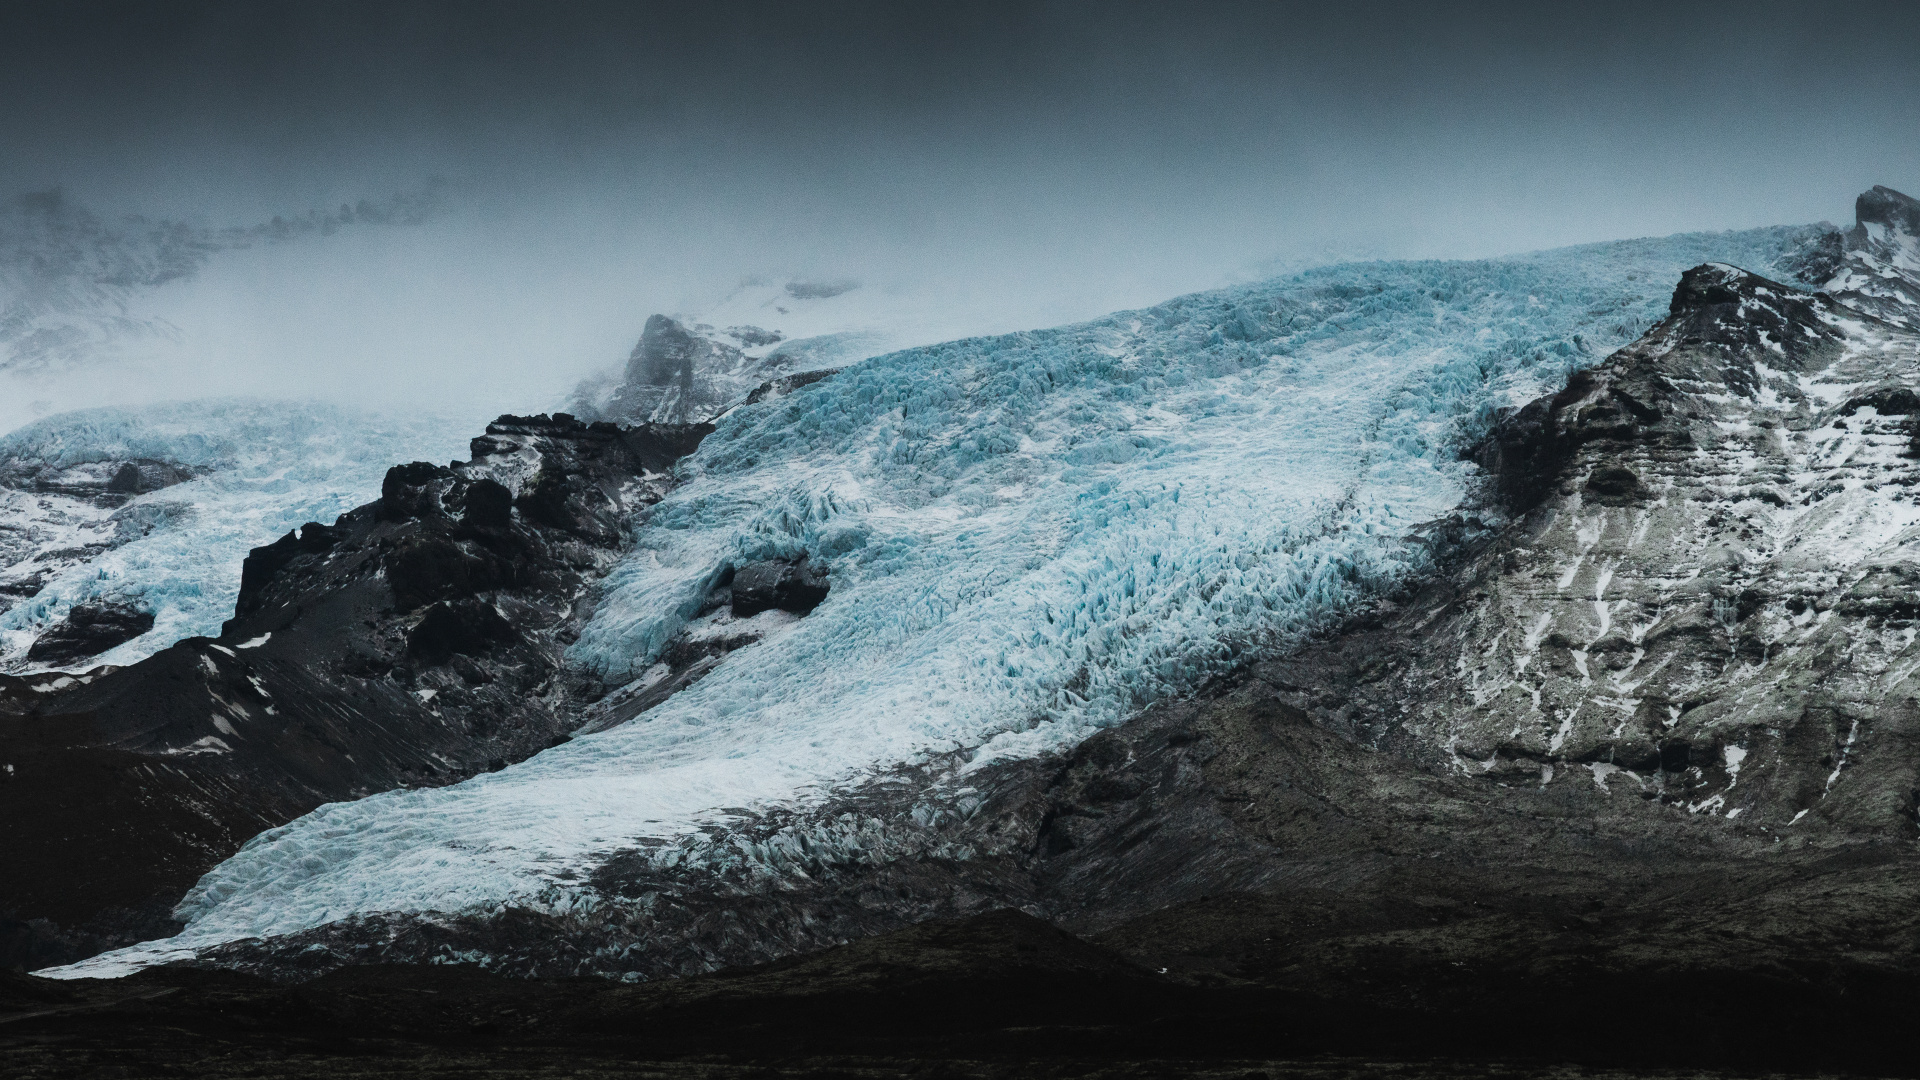 Gletscher, Natur, Mount Scenery, Schnee, Bergigen Landschaftsformen. Wallpaper in 1920x1080 Resolution